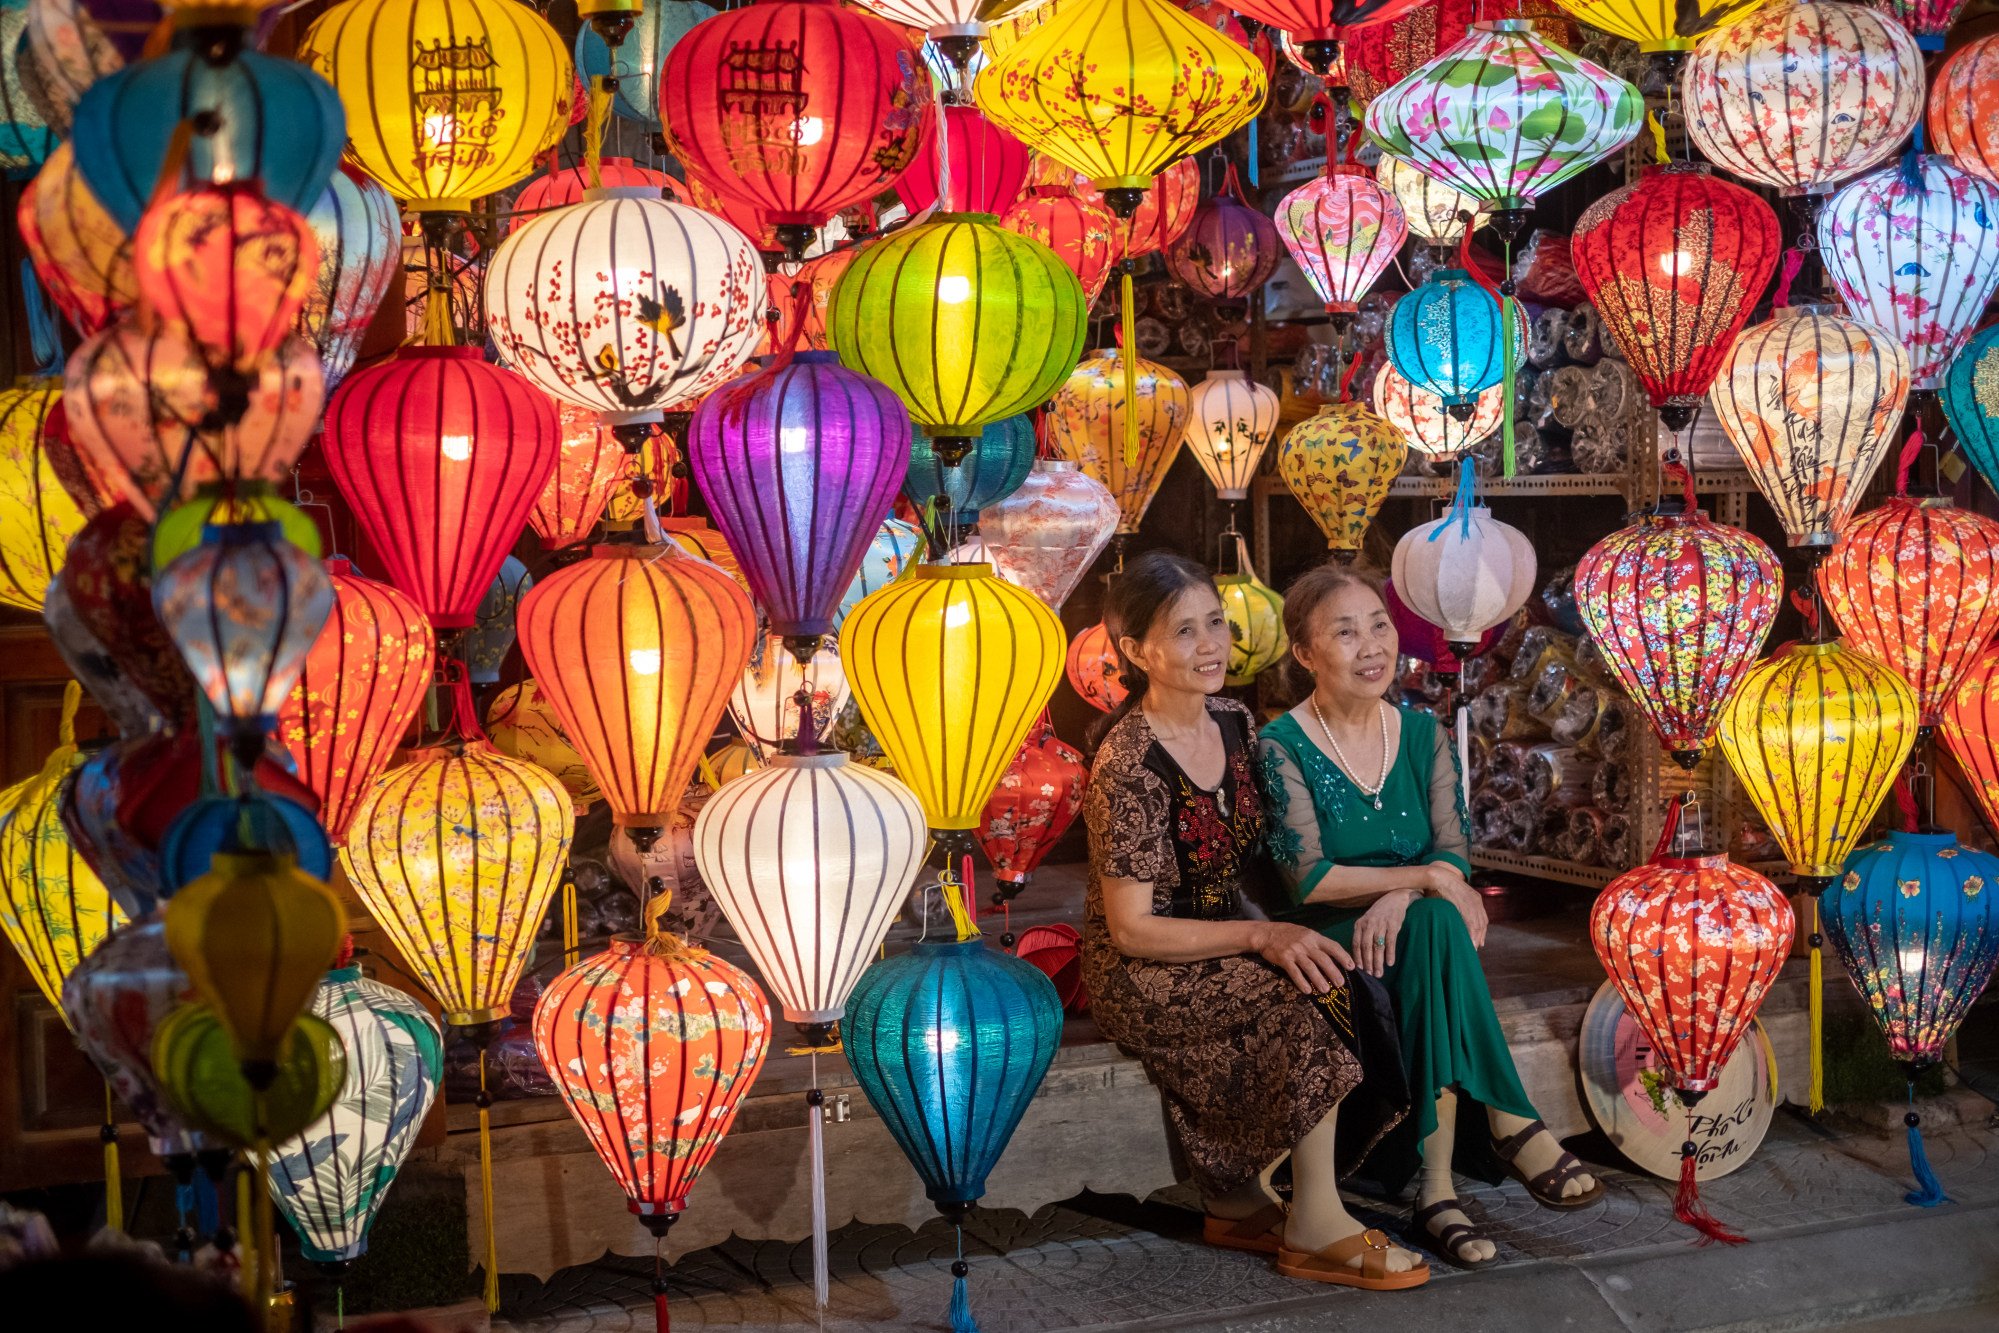 Đèn lồng truyền thống được bày bán ở phố cổ Hội An. ảnh: Getty Images